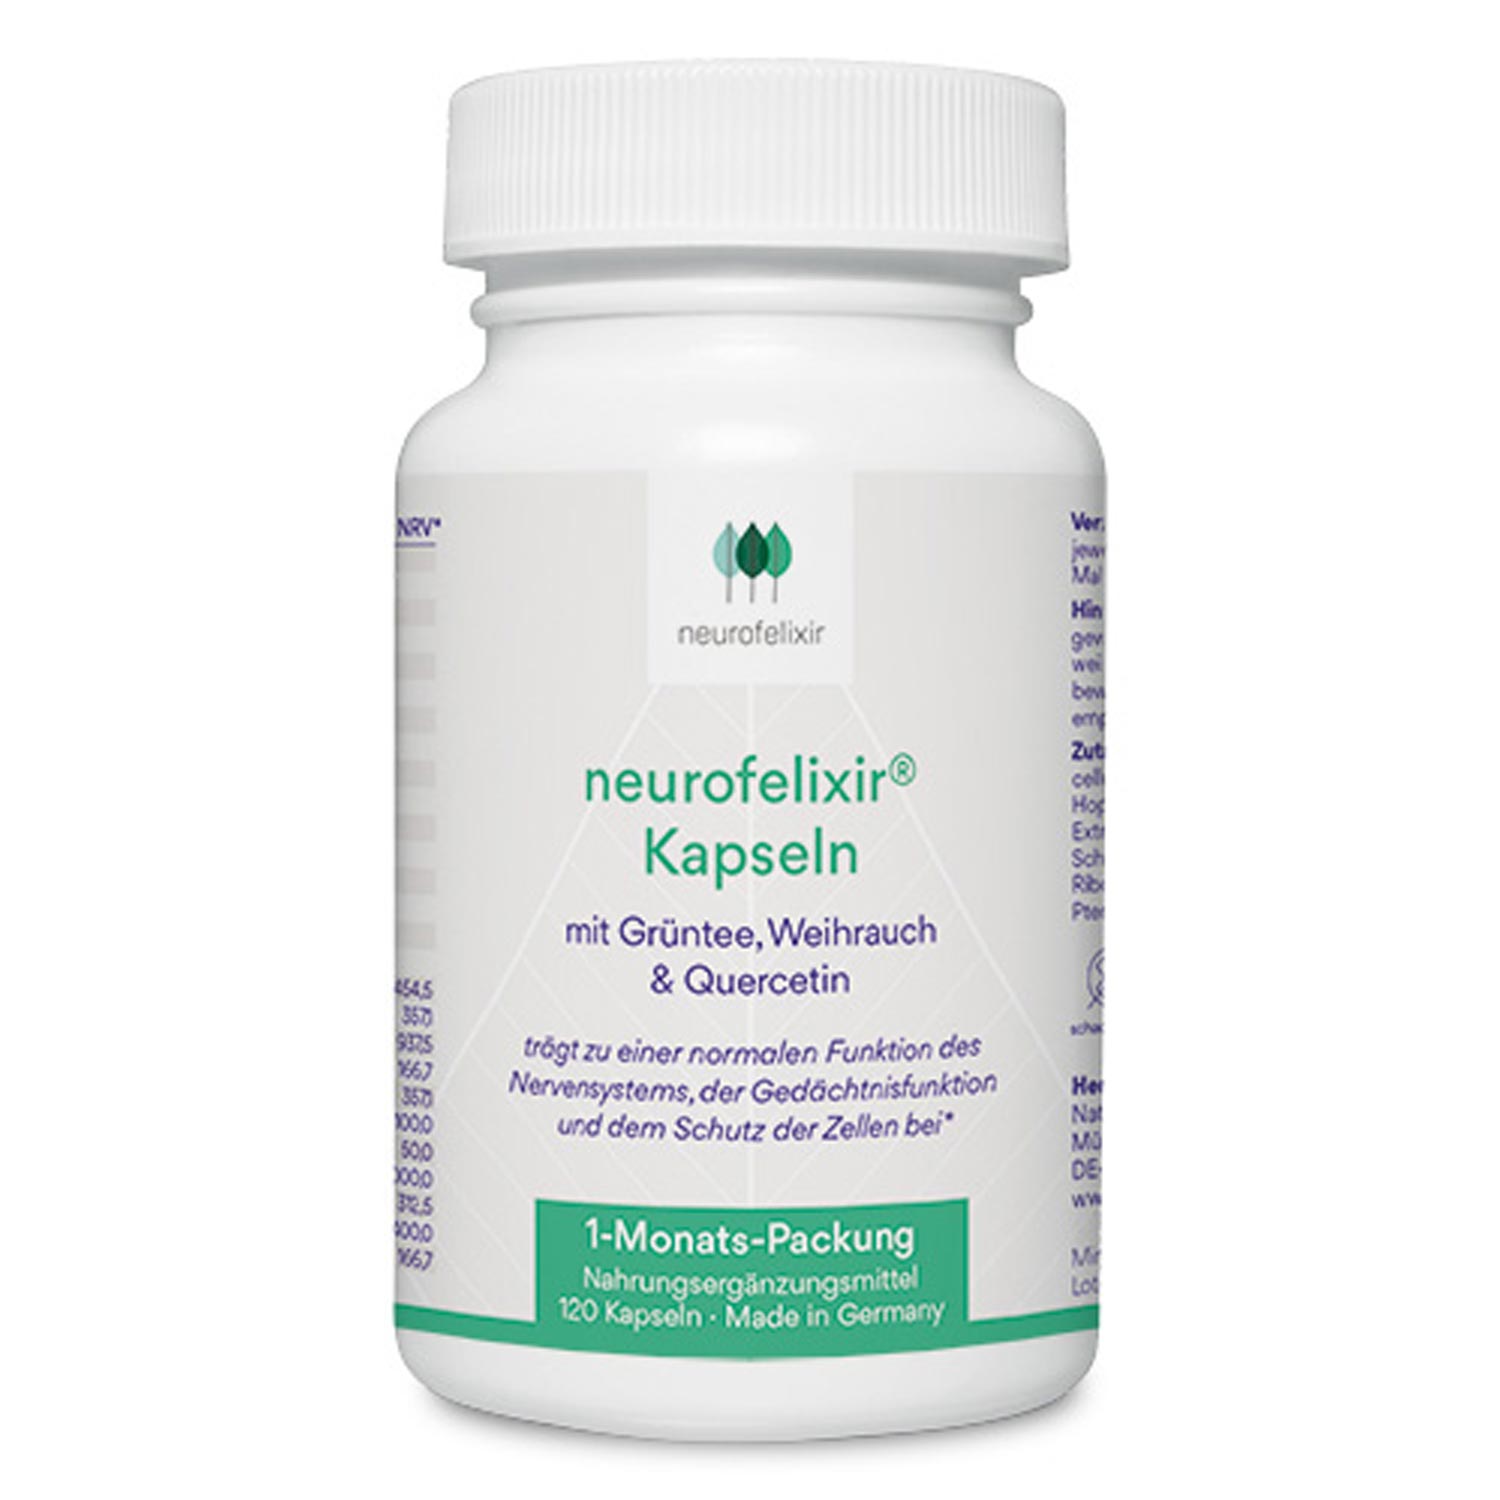 neurofelixir® Kapseln von NatuGena - 120 Kapseln